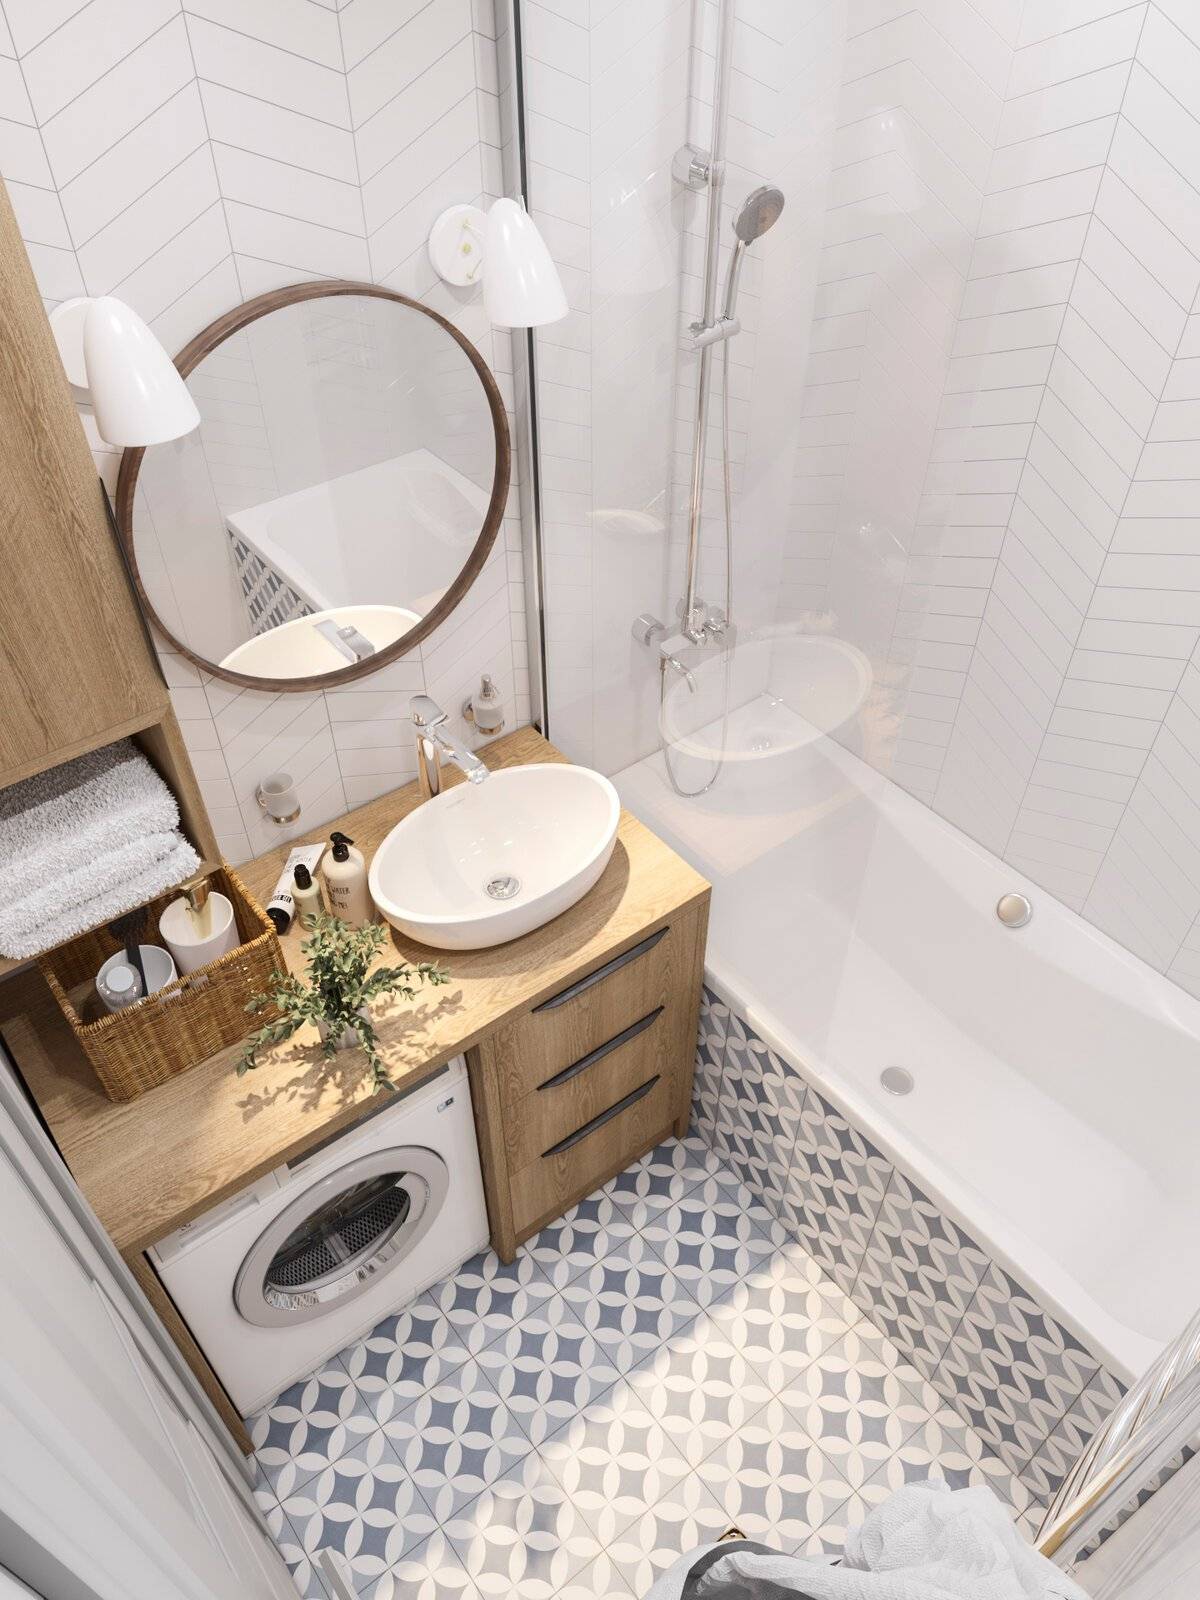 Дизайн ванной комнаты маленького размера без туалета: гармоничное сочетание практичности с красотой в фото-идеях